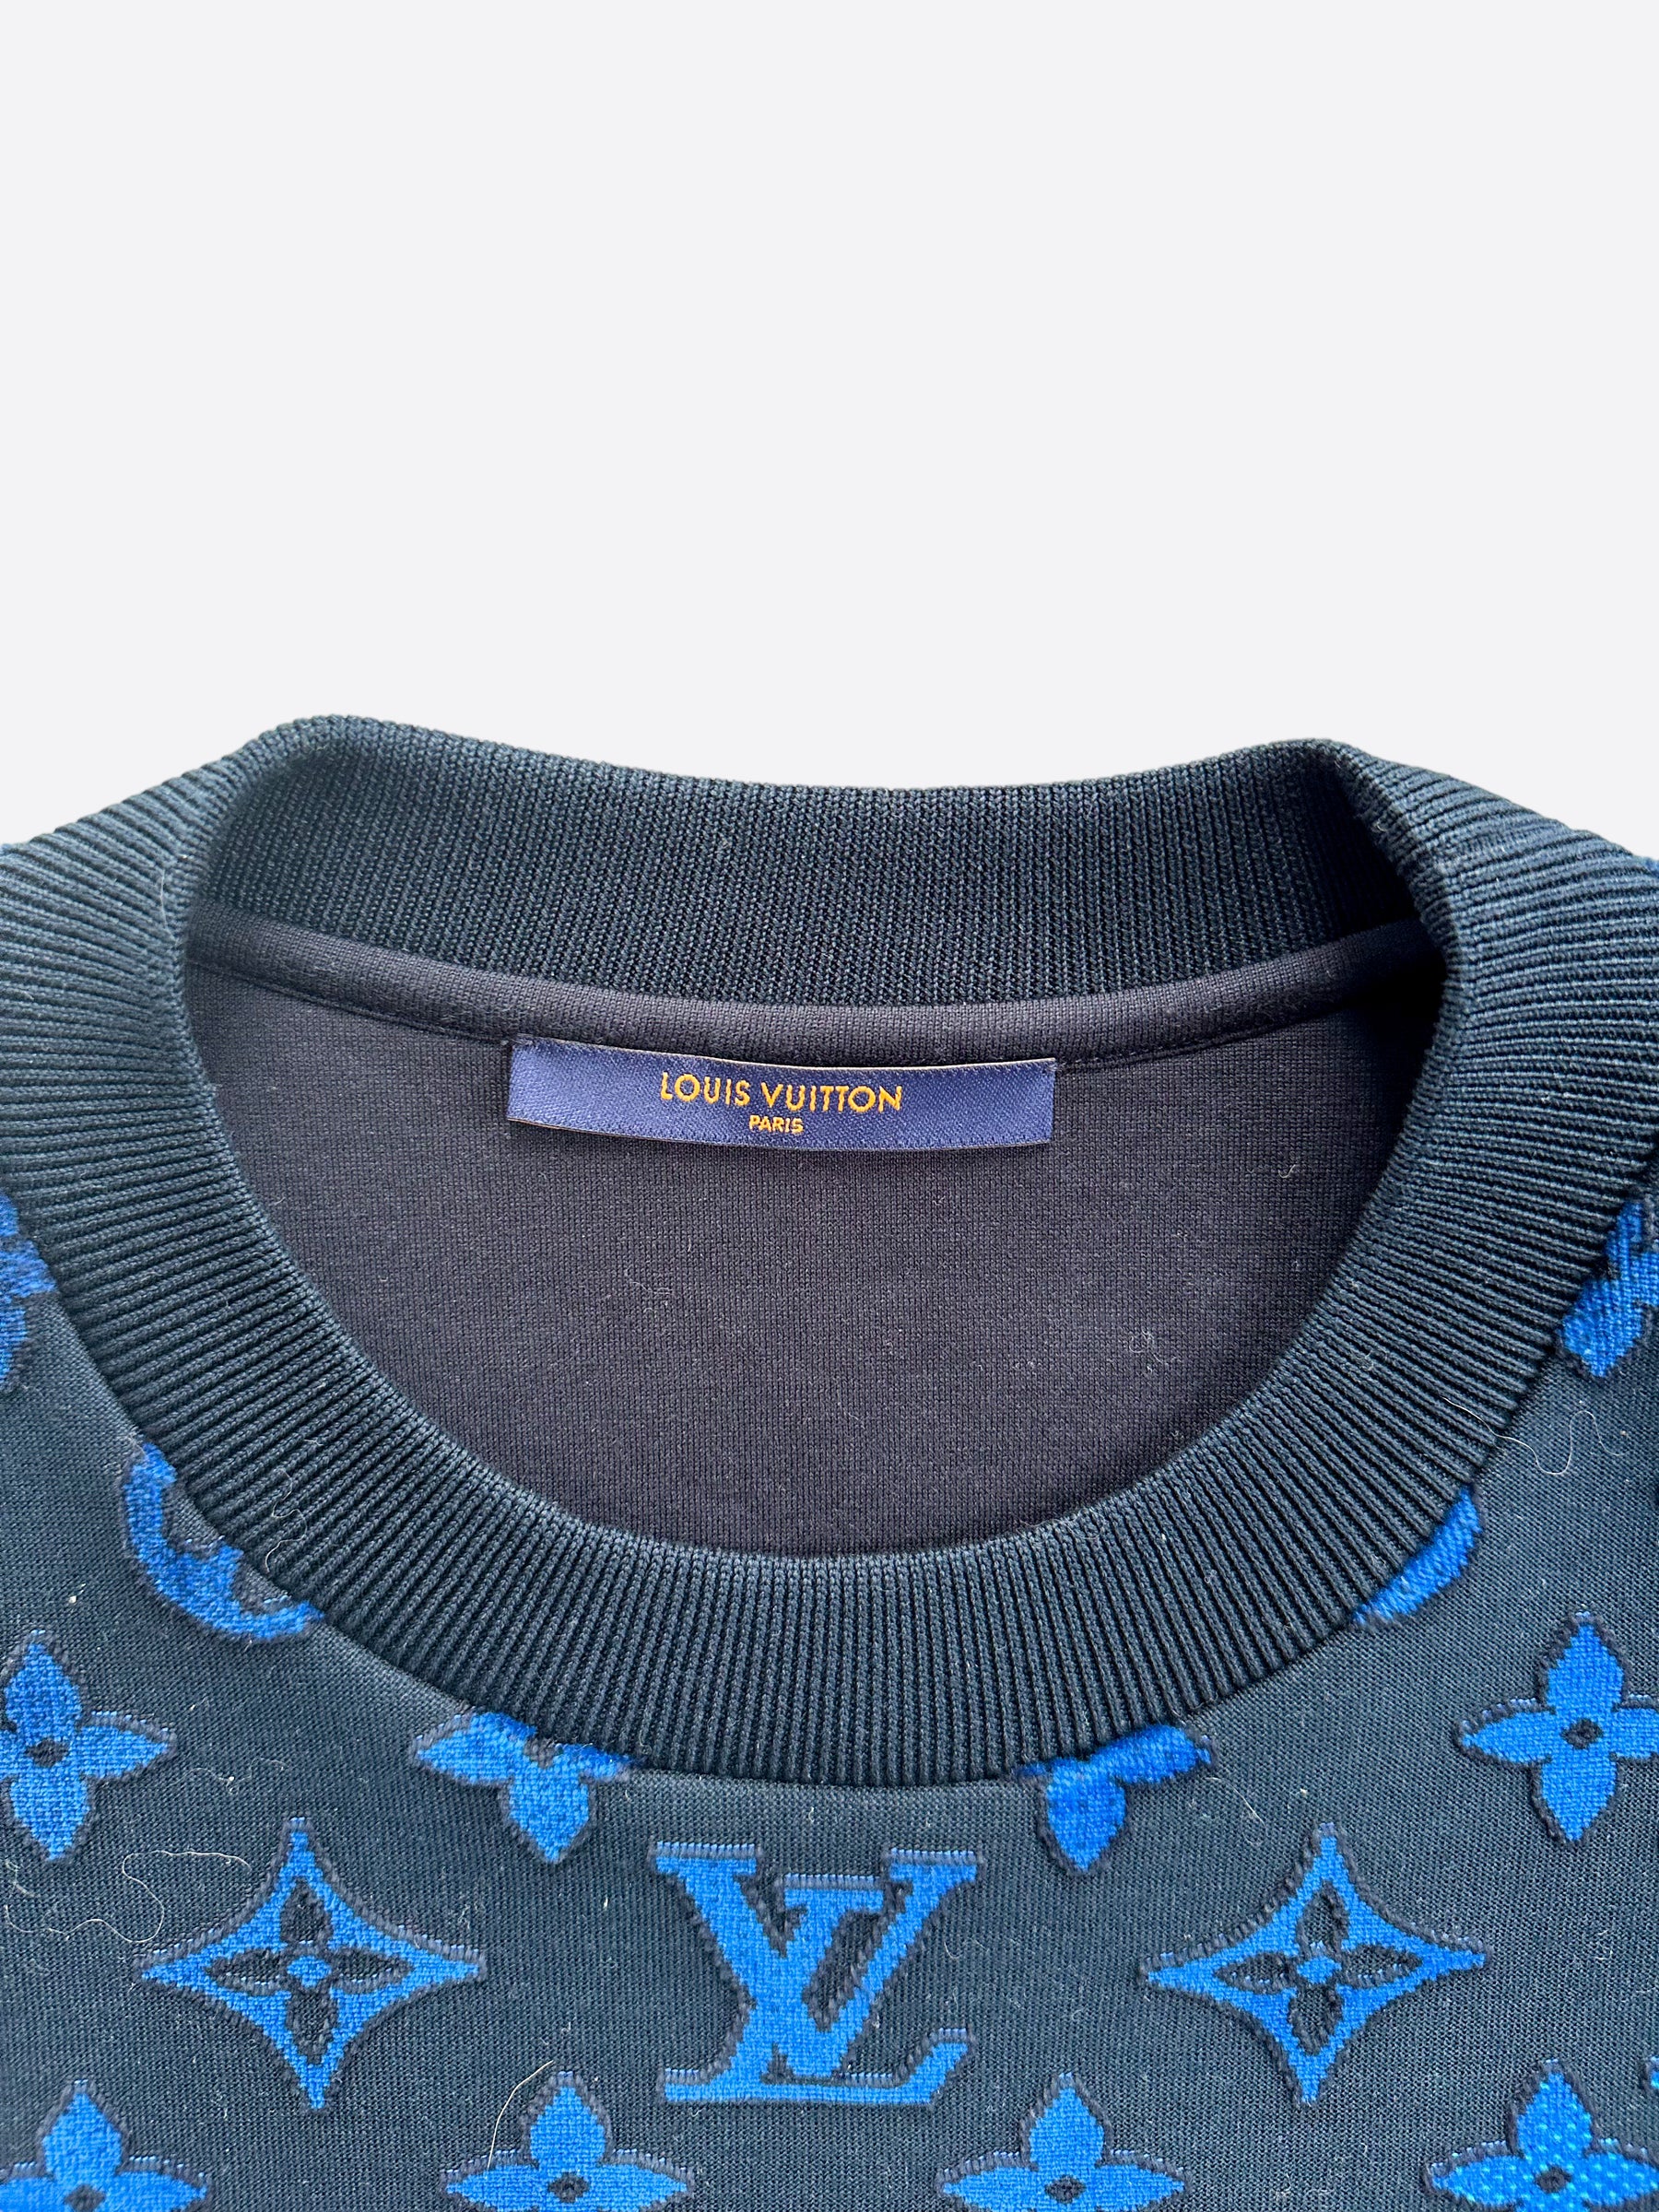 Louis Vuitton Full Monogram Blue Jacquard Crew Neck